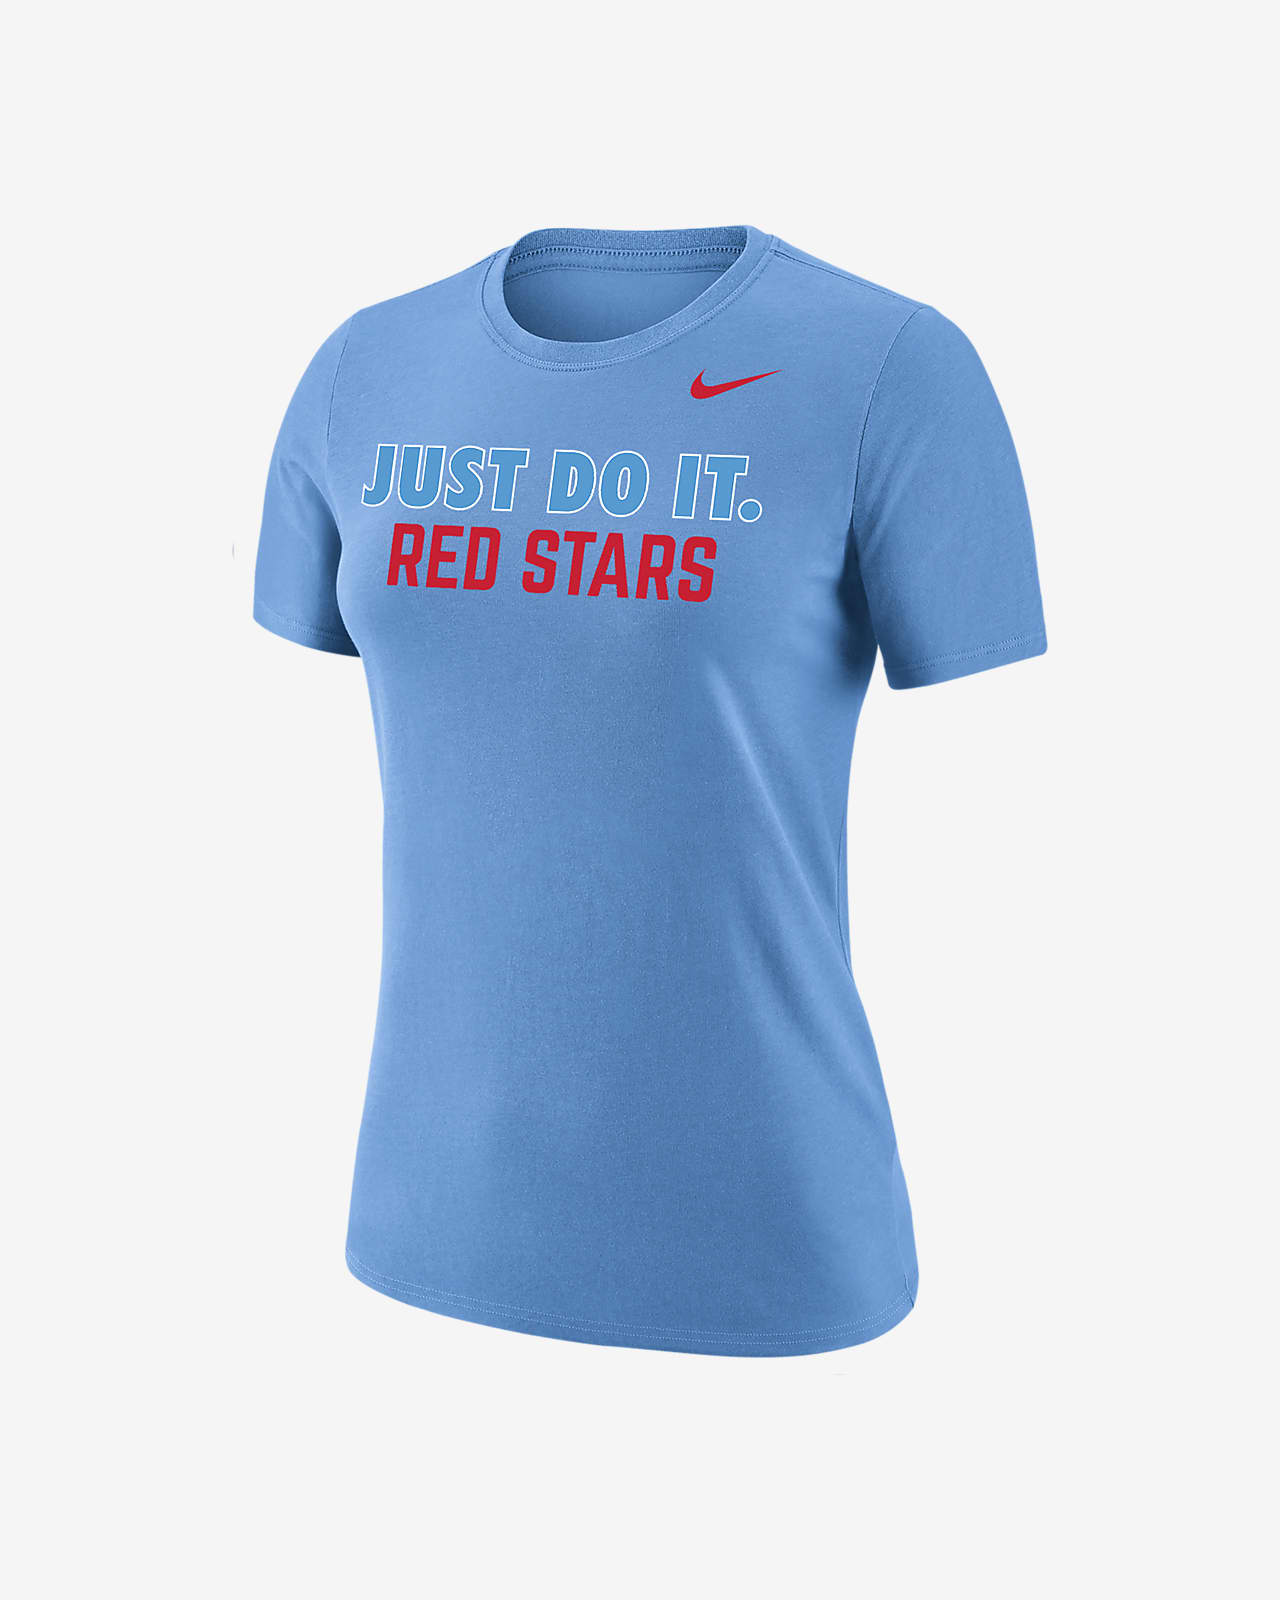 Chicago Red Stars Women's Nike Soccer T-Shirt